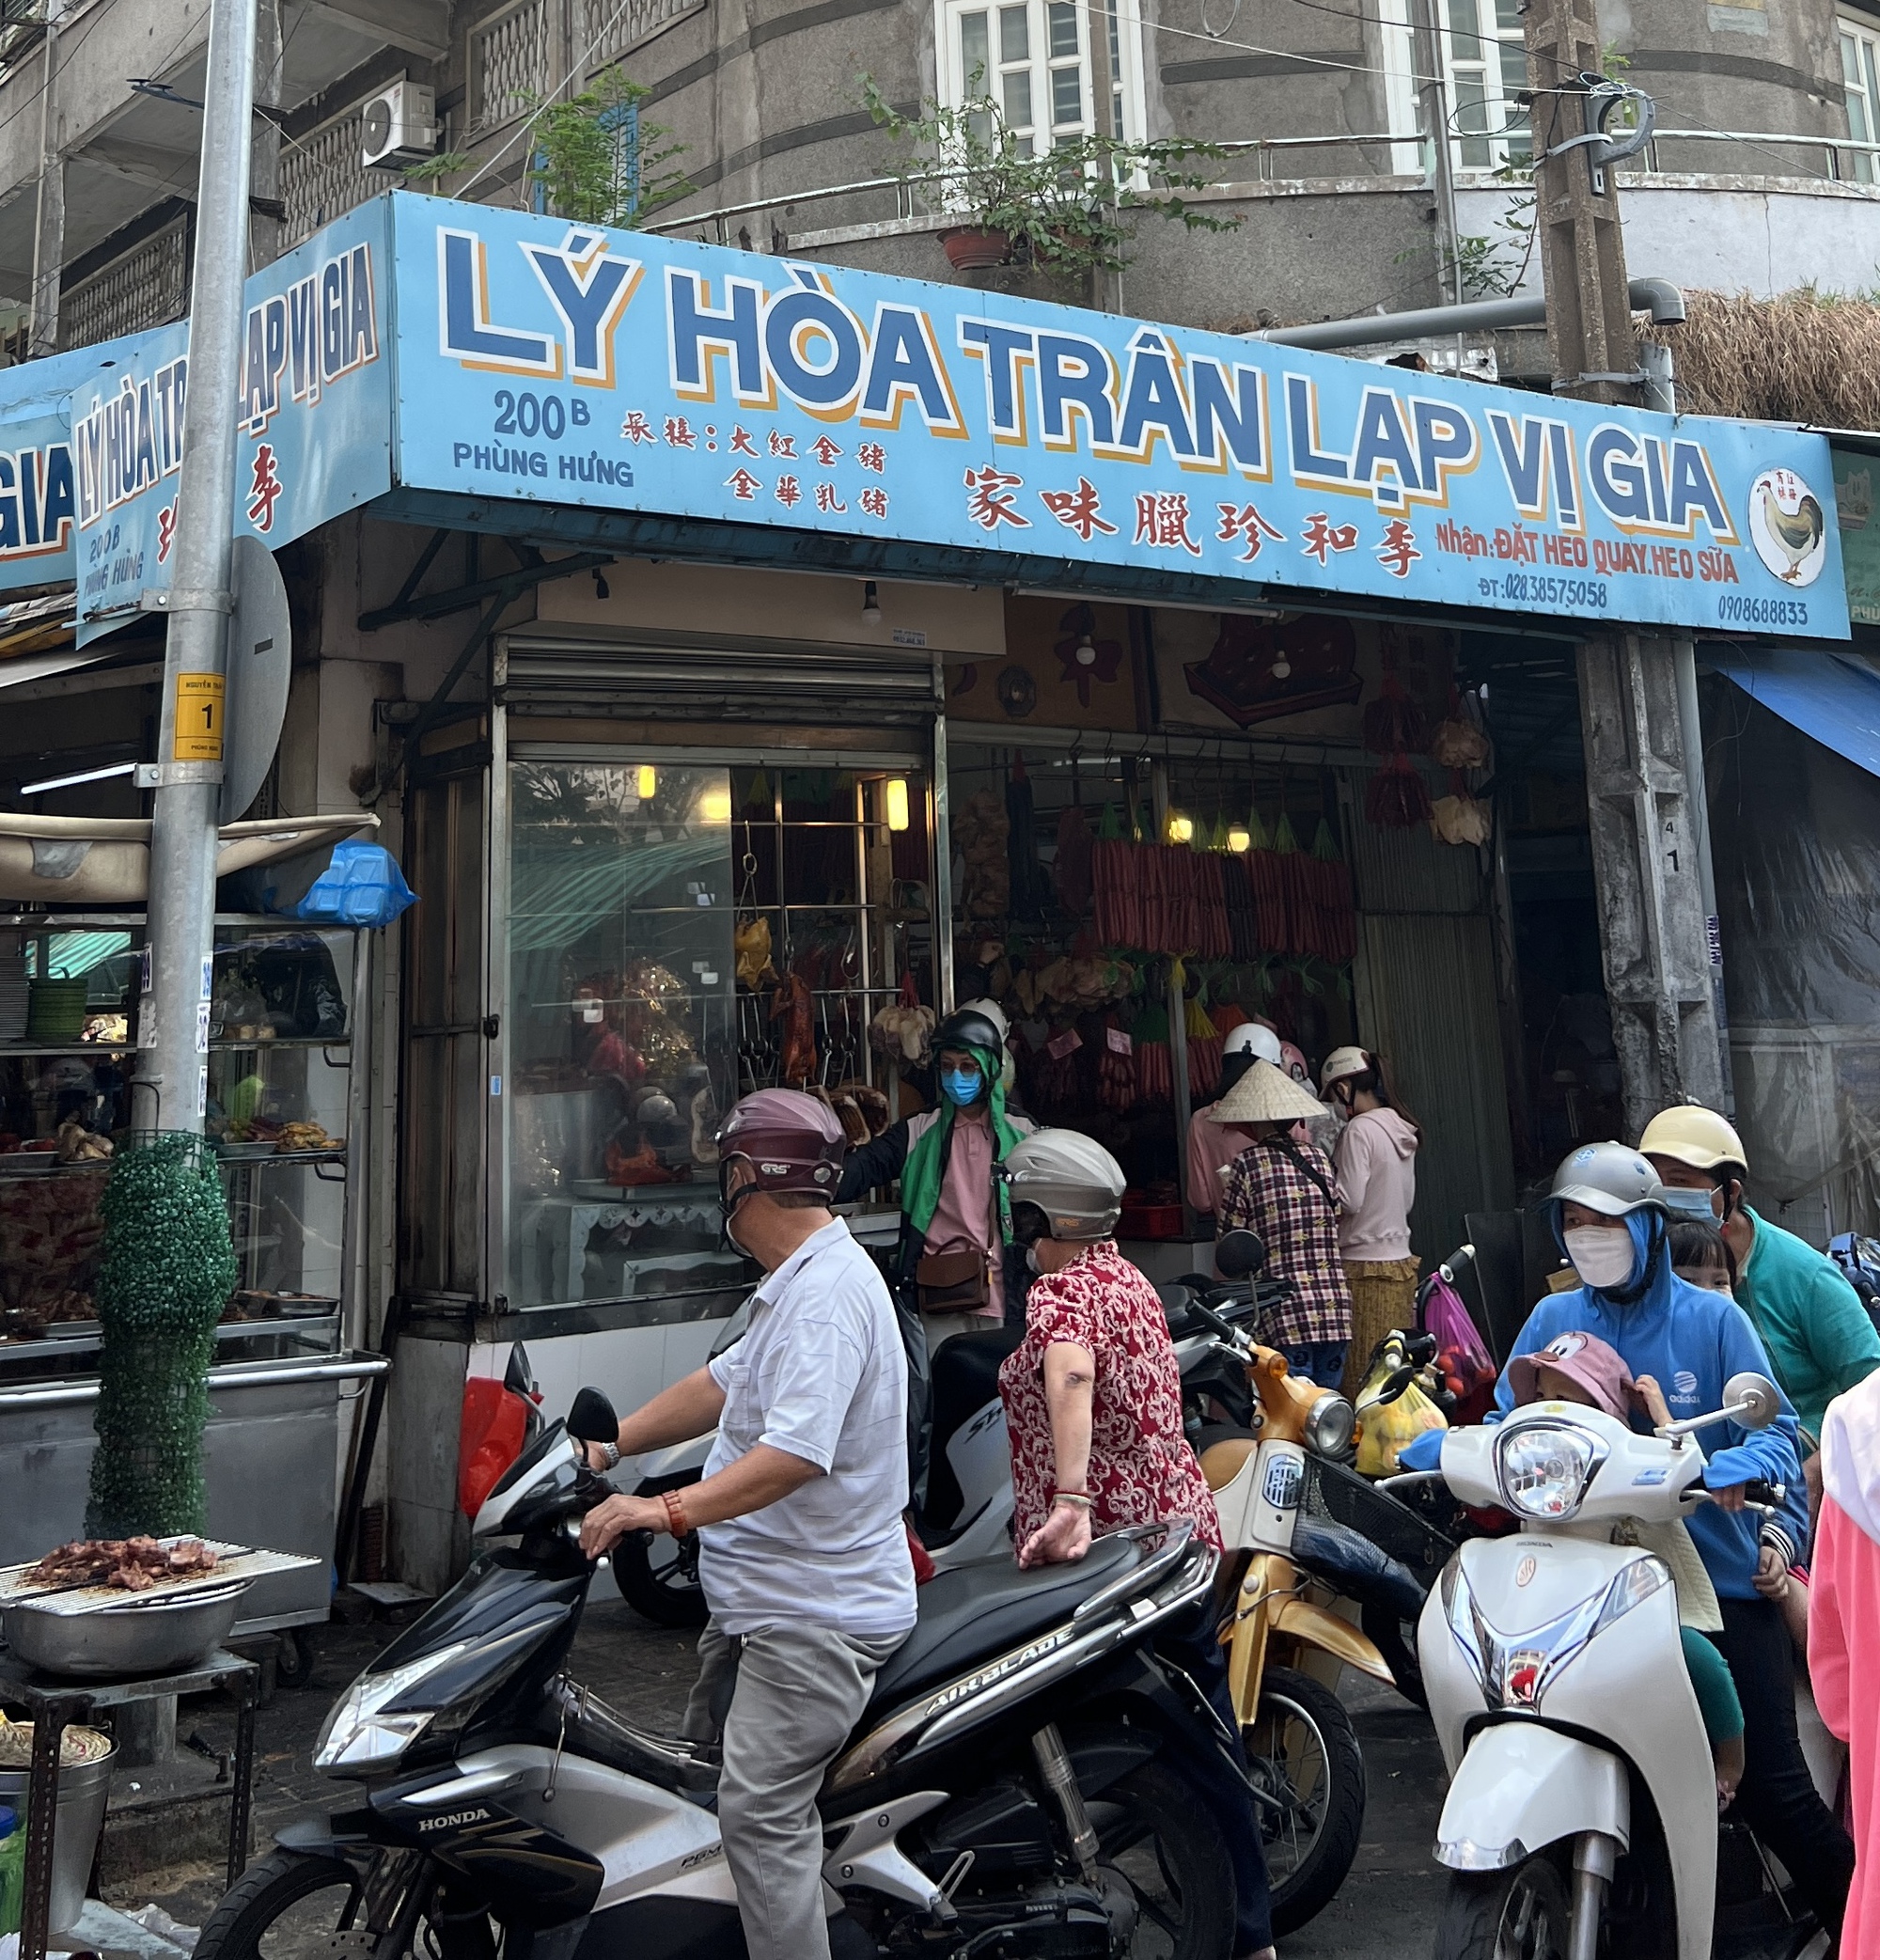 Sài Gòn: Cửa tiệm lạp xưởng hơn 80 năm, hút thực khách trong ngày Tết miền Nam - Ảnh 3.